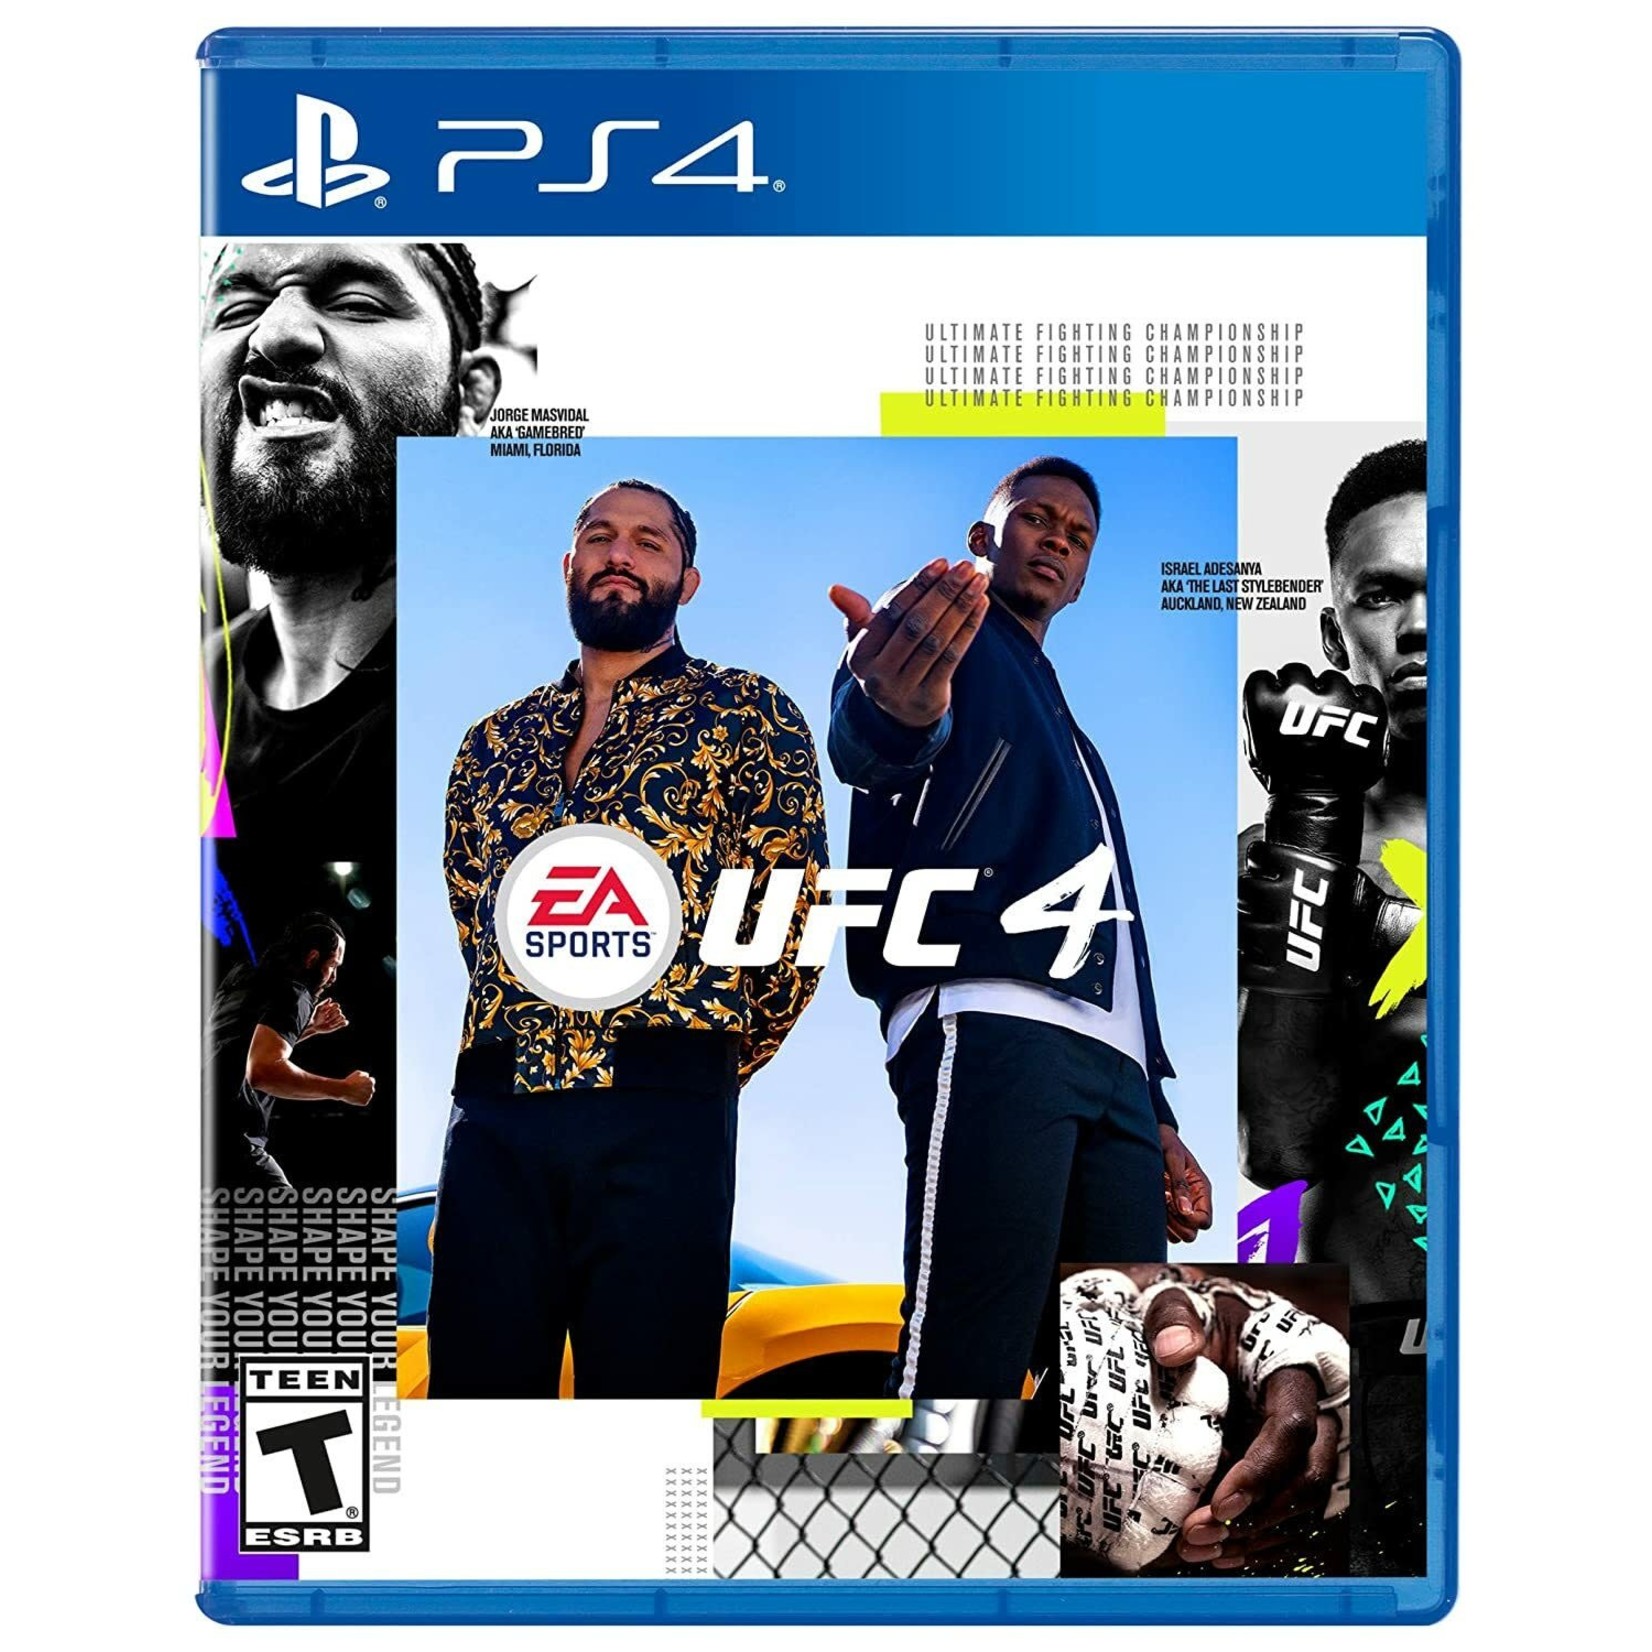 PS4U-EA SPORTS UFC 4